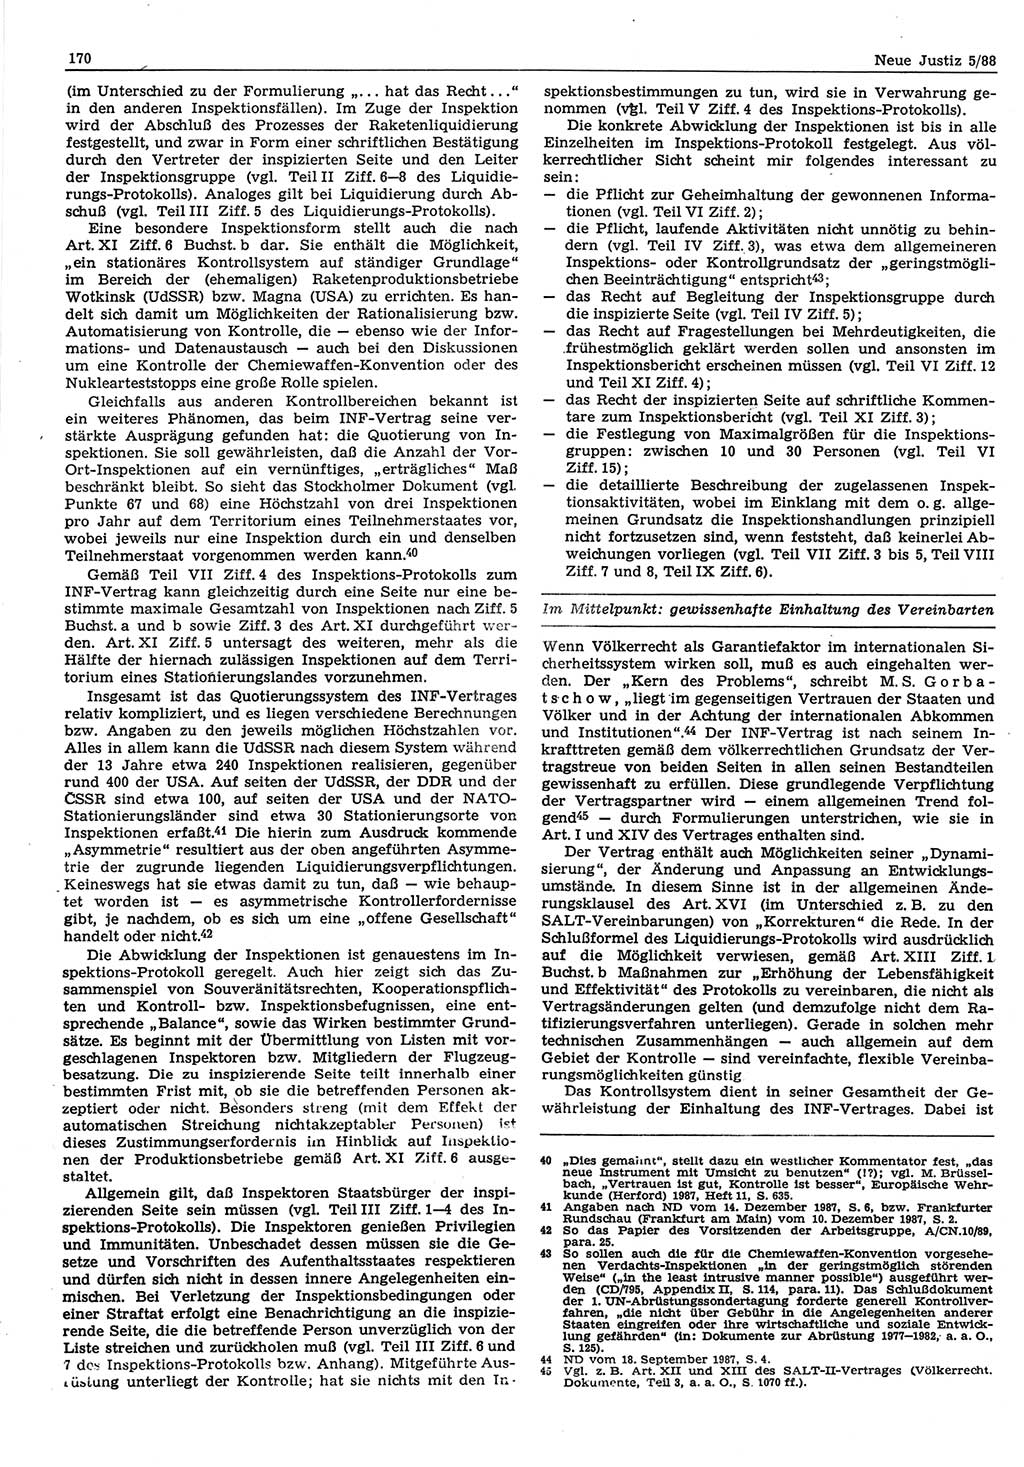 Neue Justiz (NJ), Zeitschrift für sozialistisches Recht und Gesetzlichkeit [Deutsche Demokratische Republik (DDR)], 42. Jahrgang 1988, Seite 170 (NJ DDR 1988, S. 170)